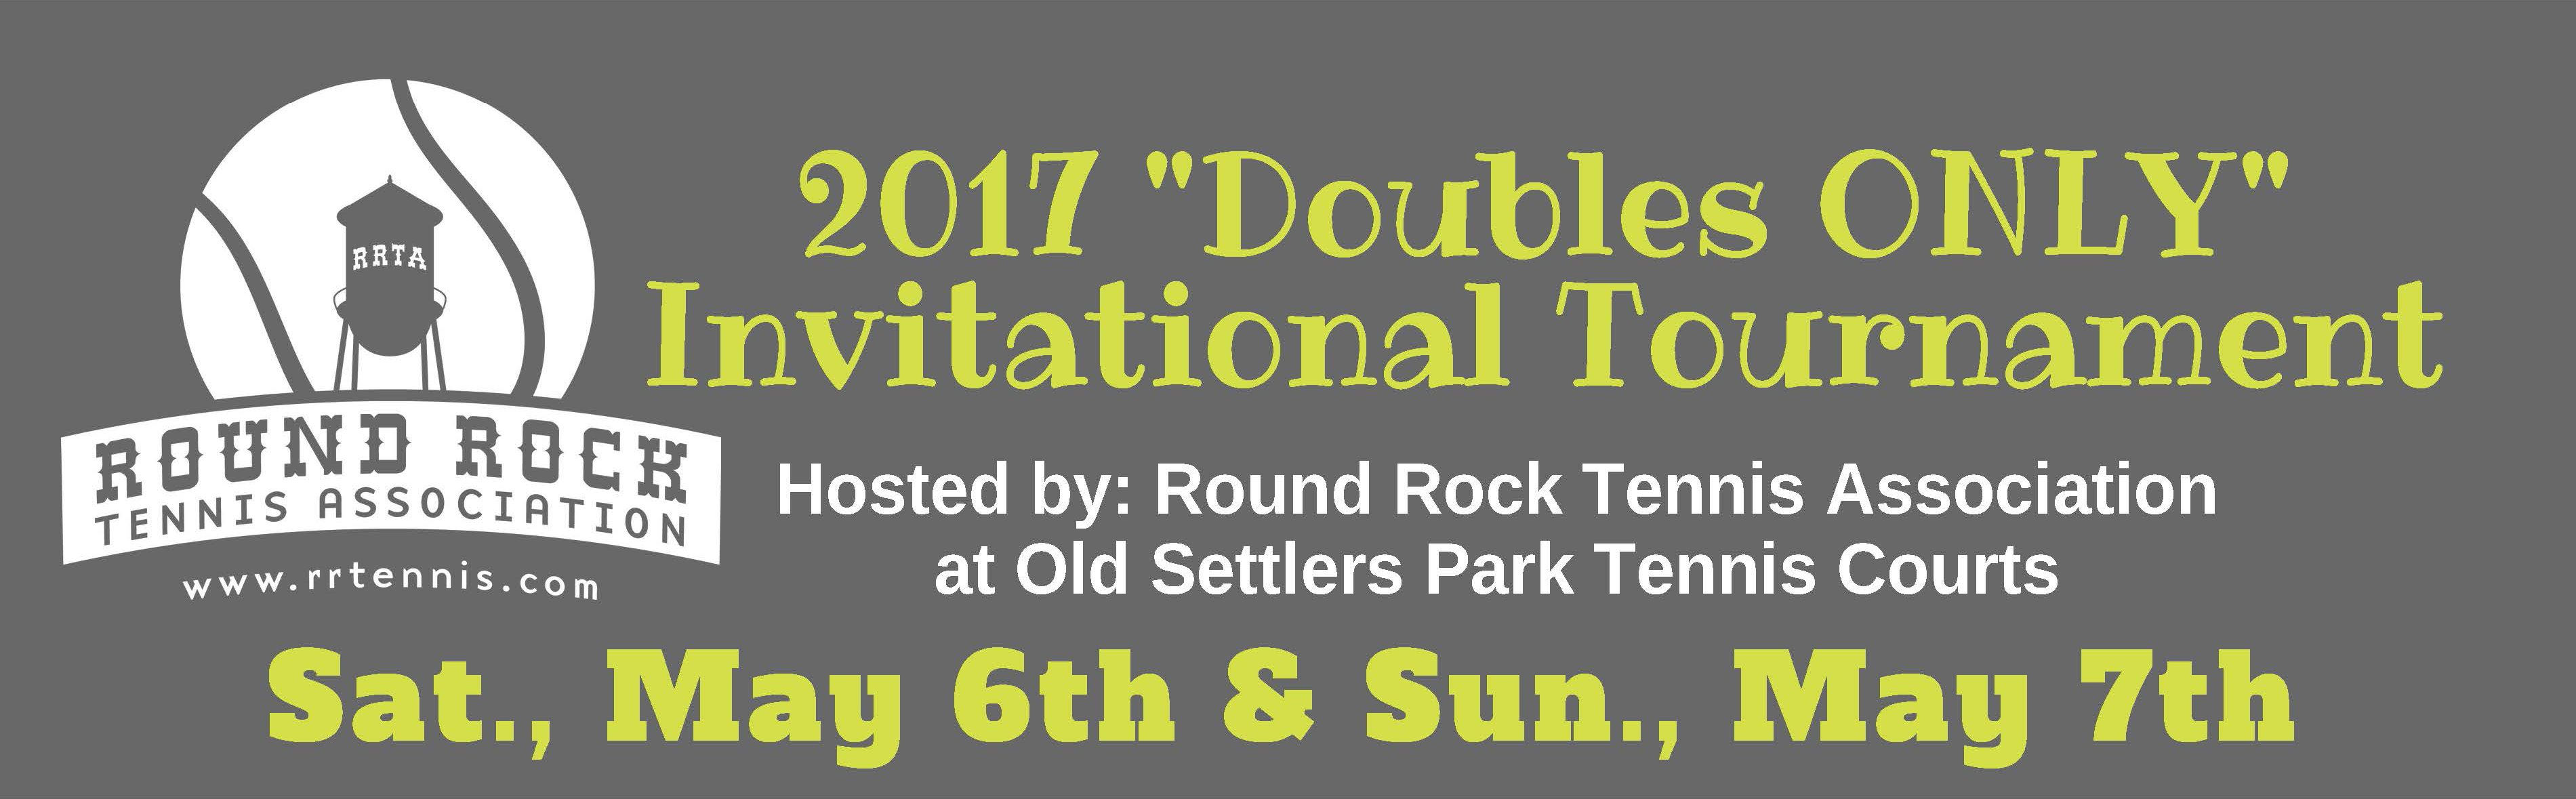 Round Rock Tennis Association header